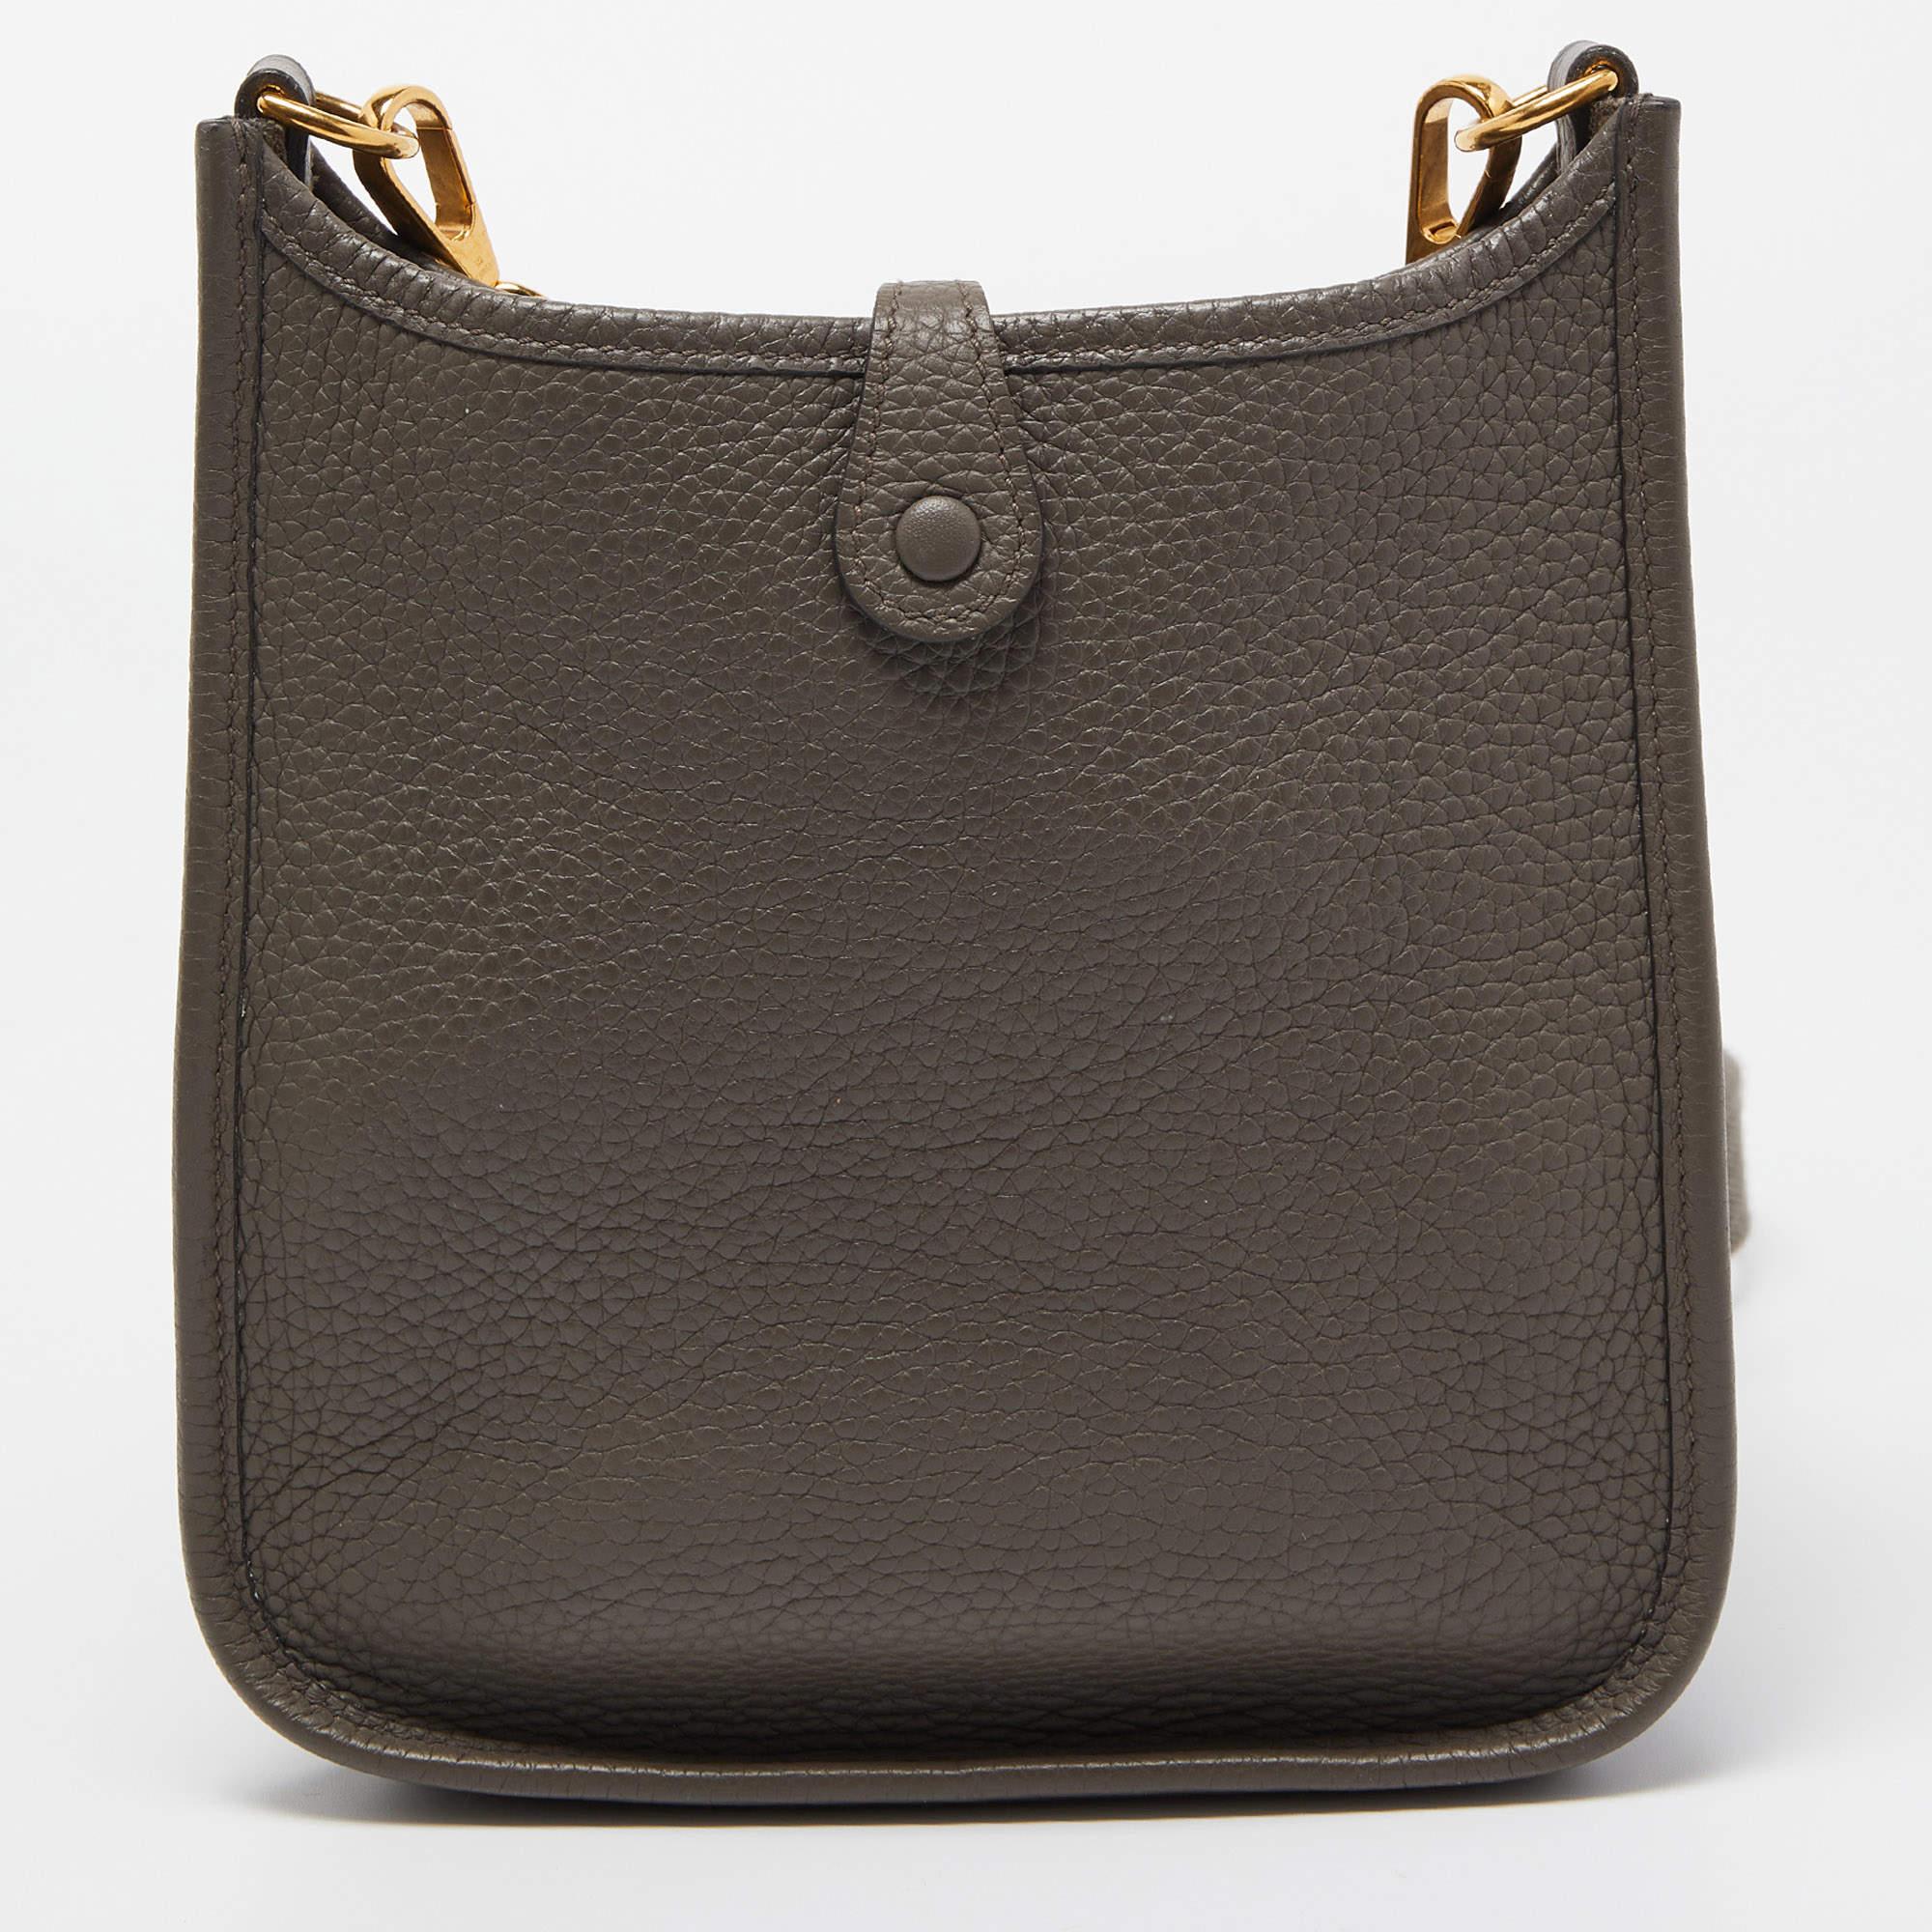 Hermes Etain Taurillon Clemence Leather Evelyne TPM Bag 1